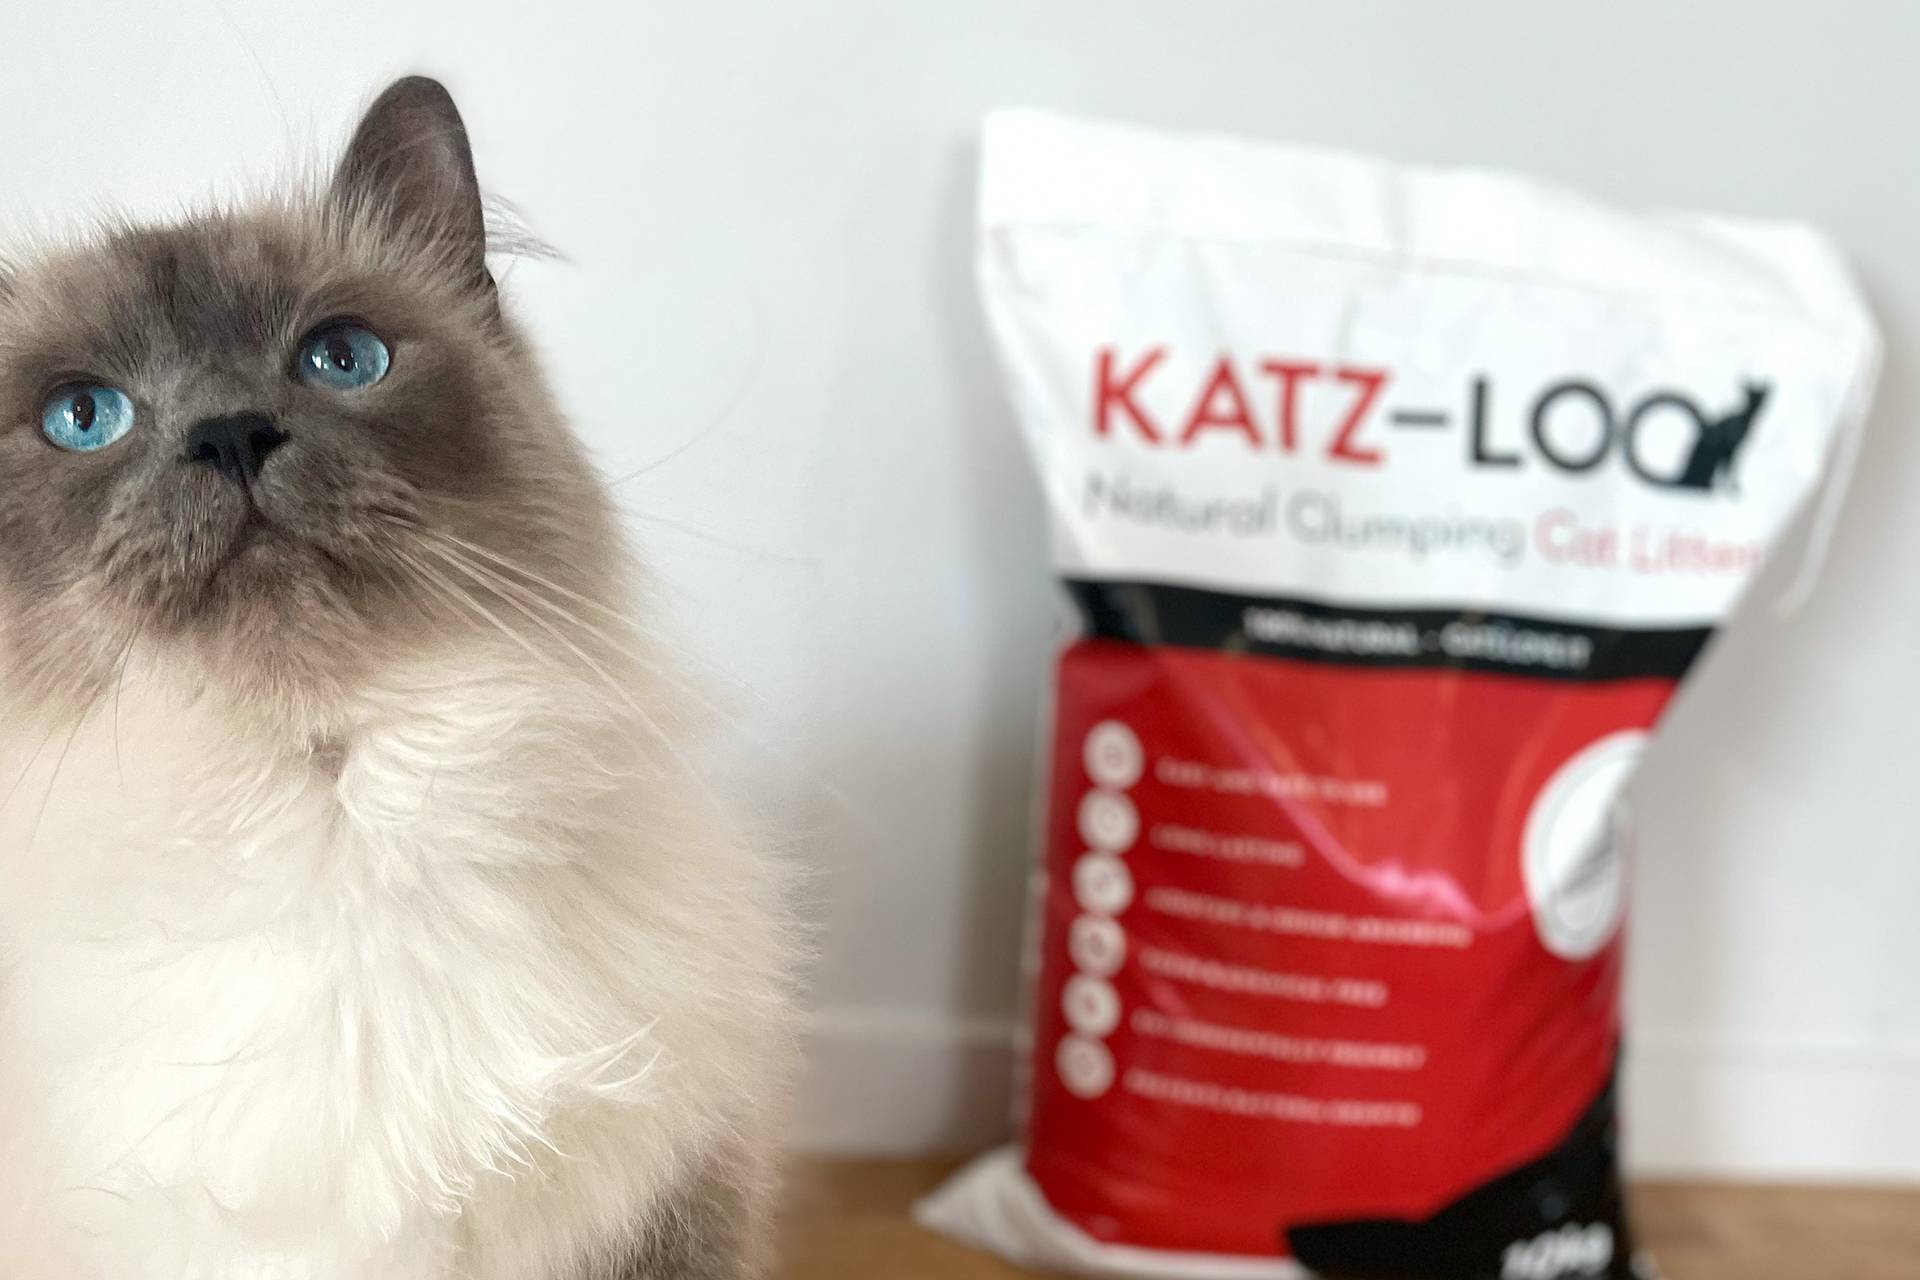 Katz-Loo cat and bag